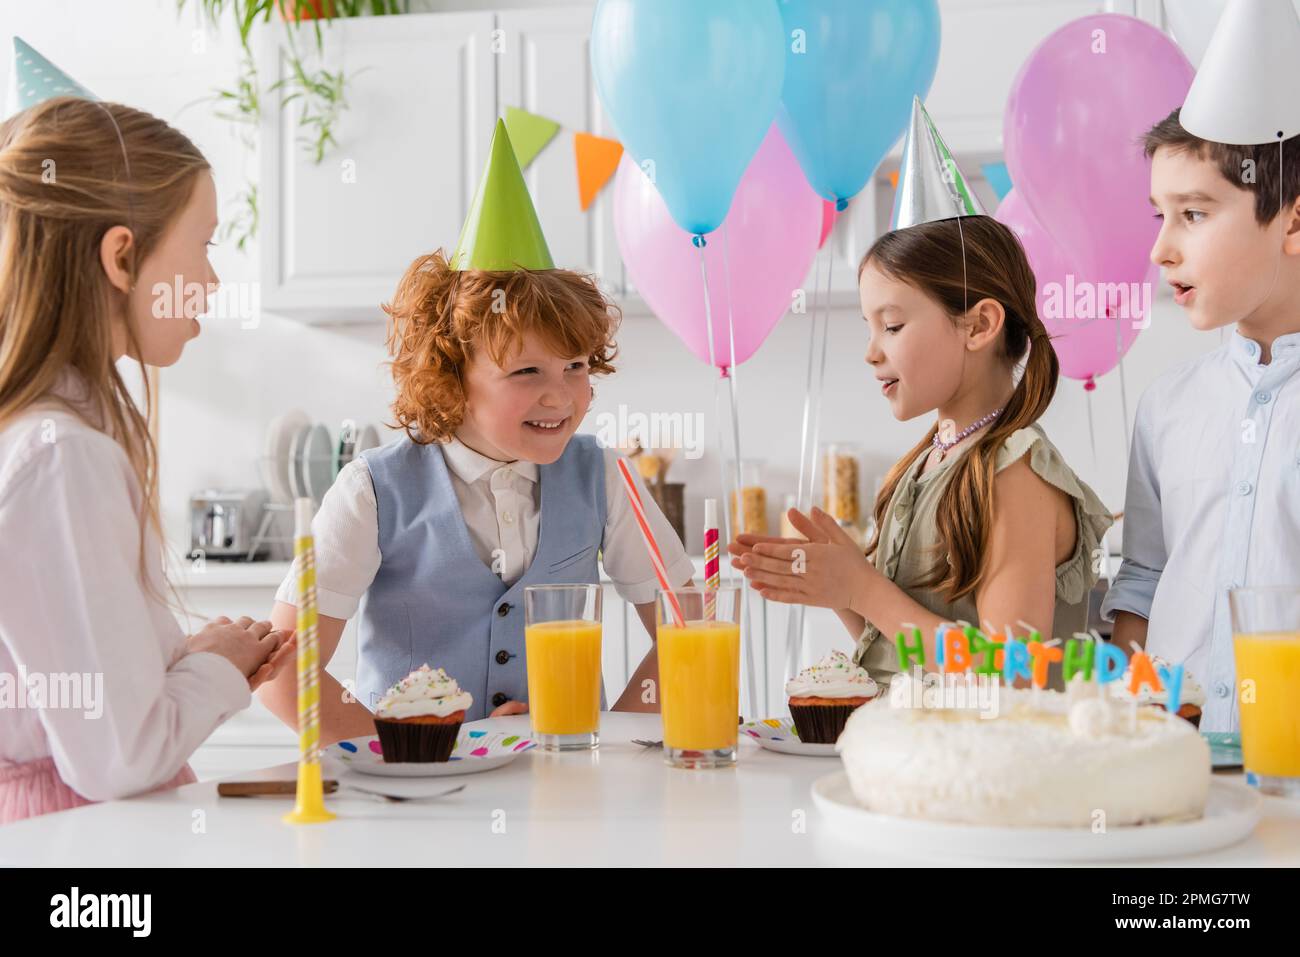 le ragazze della pre in cappellini del partito che batte le mani e cantano la canzone felice di compleanno vicino ai ragazzi e alla torta, immagine di scorta Foto Stock